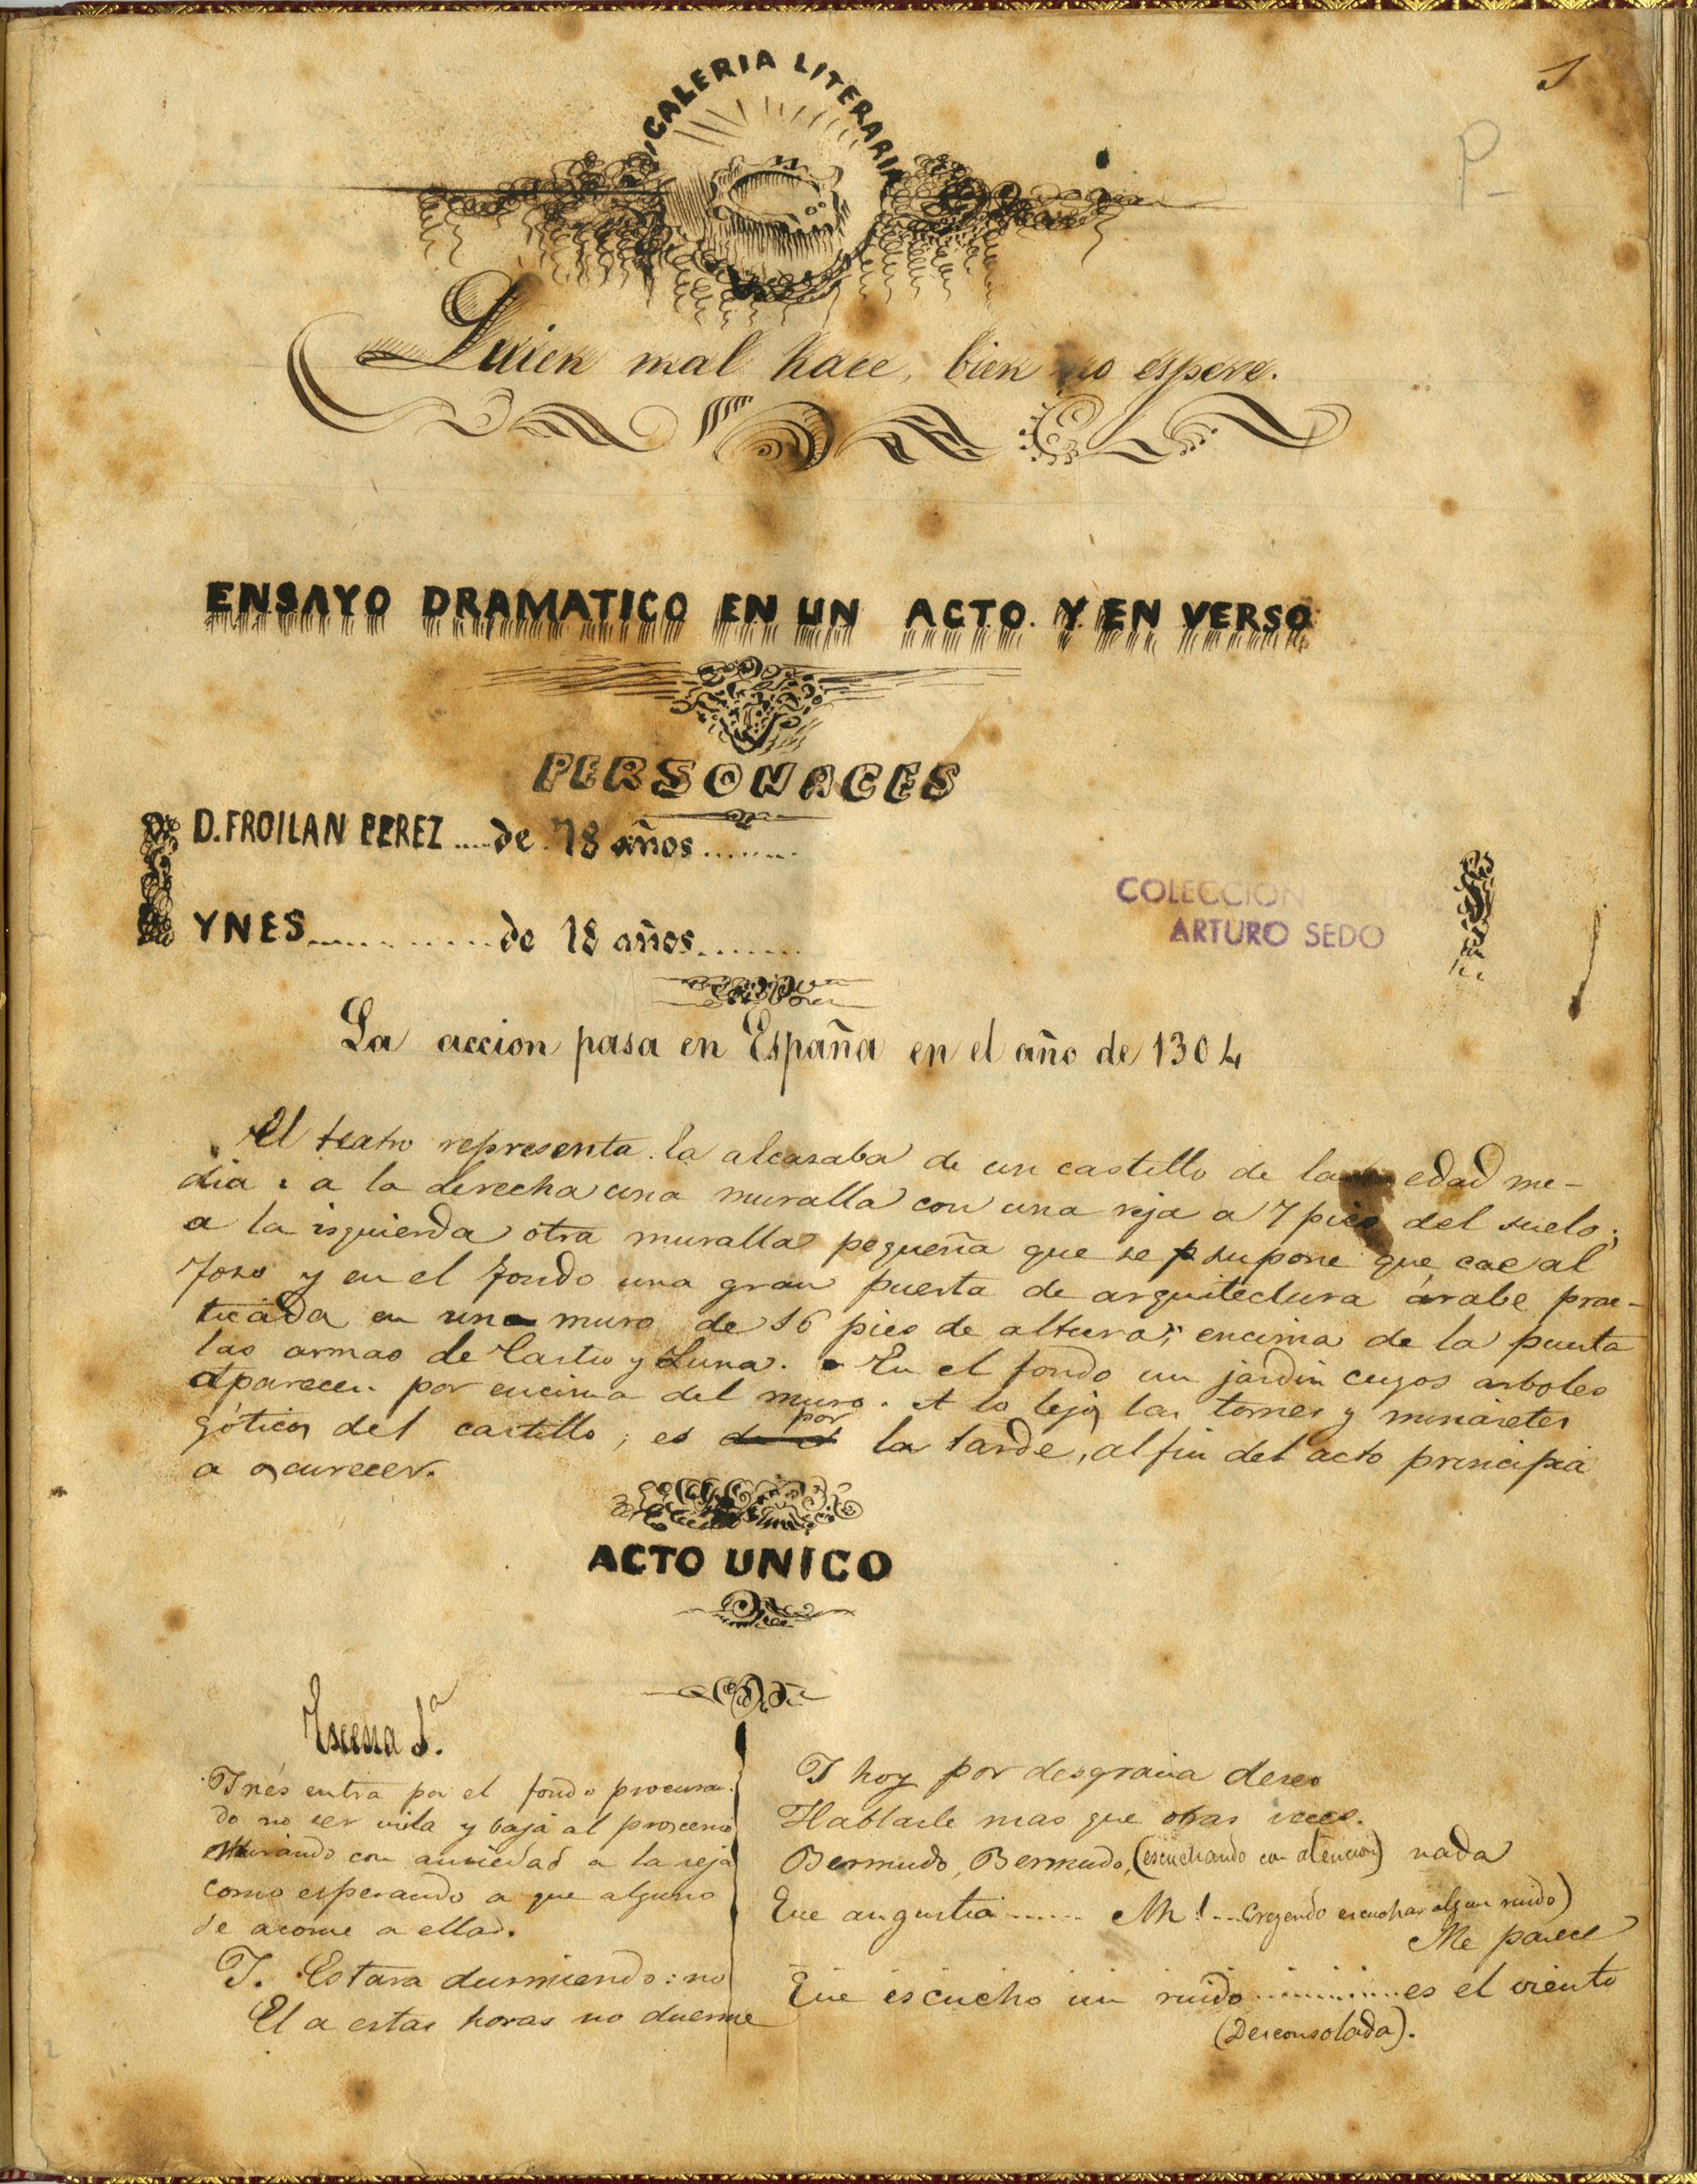 Manuscrito de 'Quien mal hace bien no espere', ensayo dramático en un acto y en verso., de 1861. / BIBLIOTECA DEL INSTITUT DE TEATRE DE BARCELONA